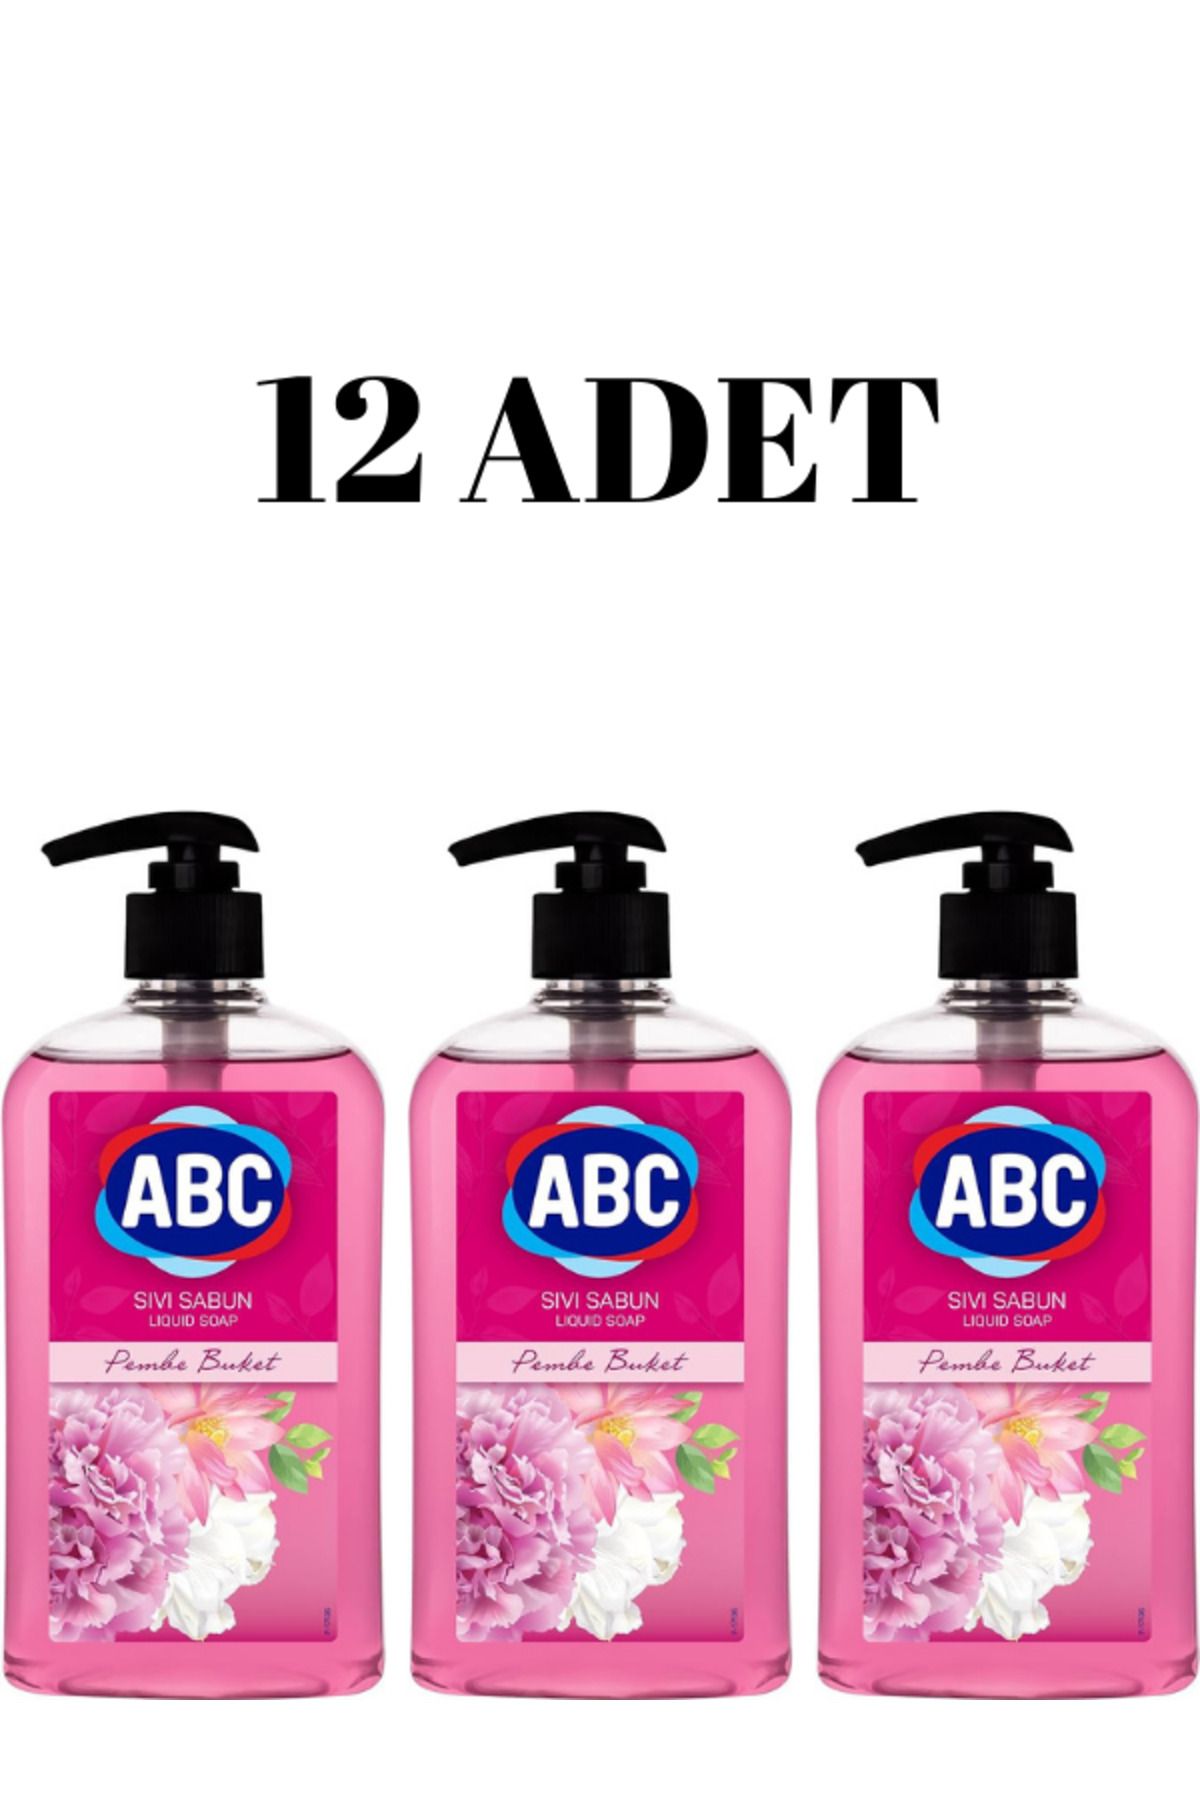 ABC Sıvı Sabun Pembe Buket 400 ml ( 12 ADET )